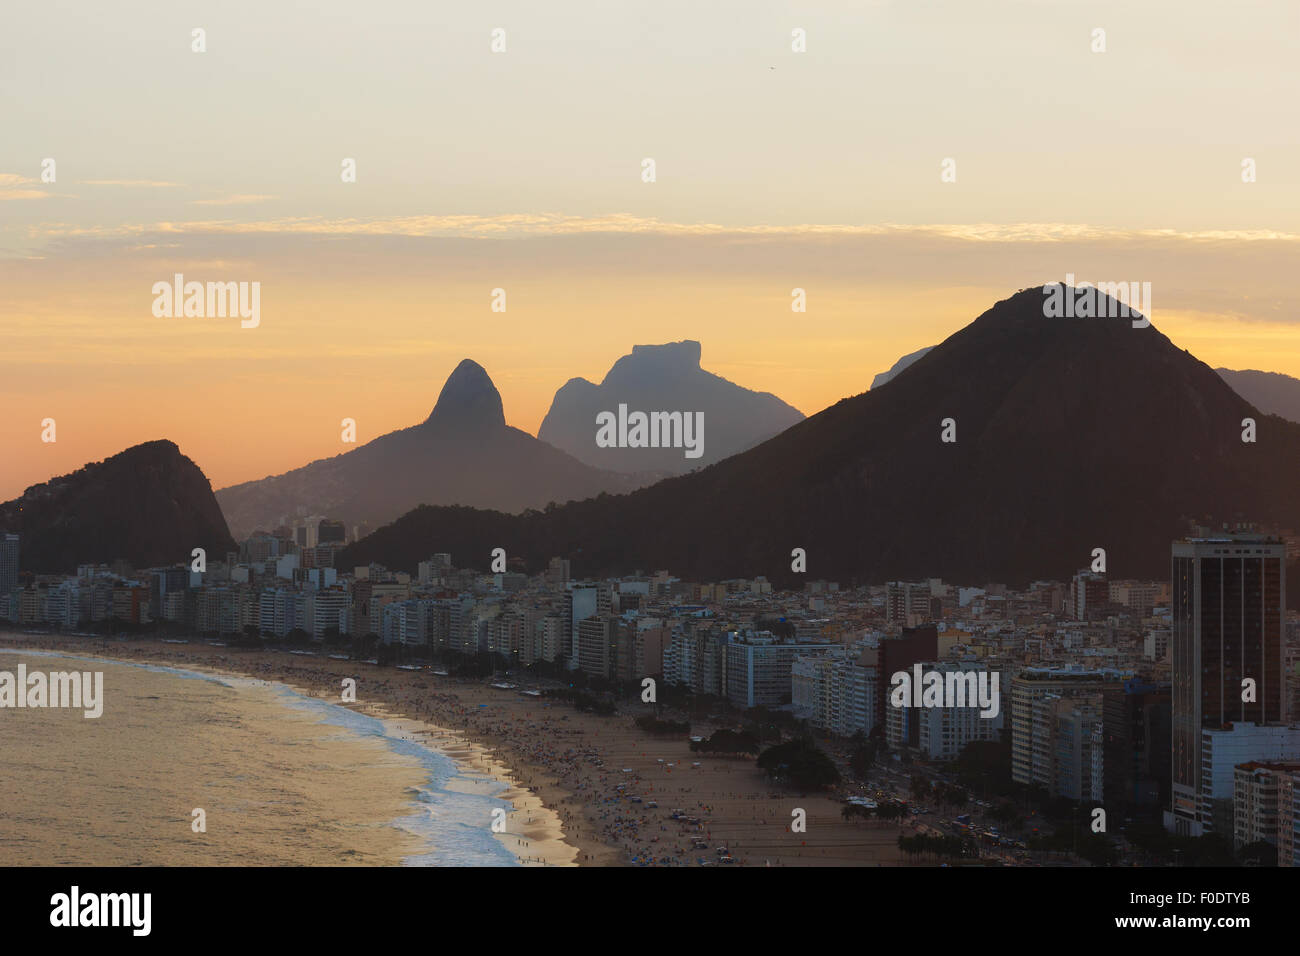 Coucher du soleil sur la plage de Copacabana, mer, montagnes, Rio de Janeiro, Brésil. Selective focus on premier plan Banque D'Images